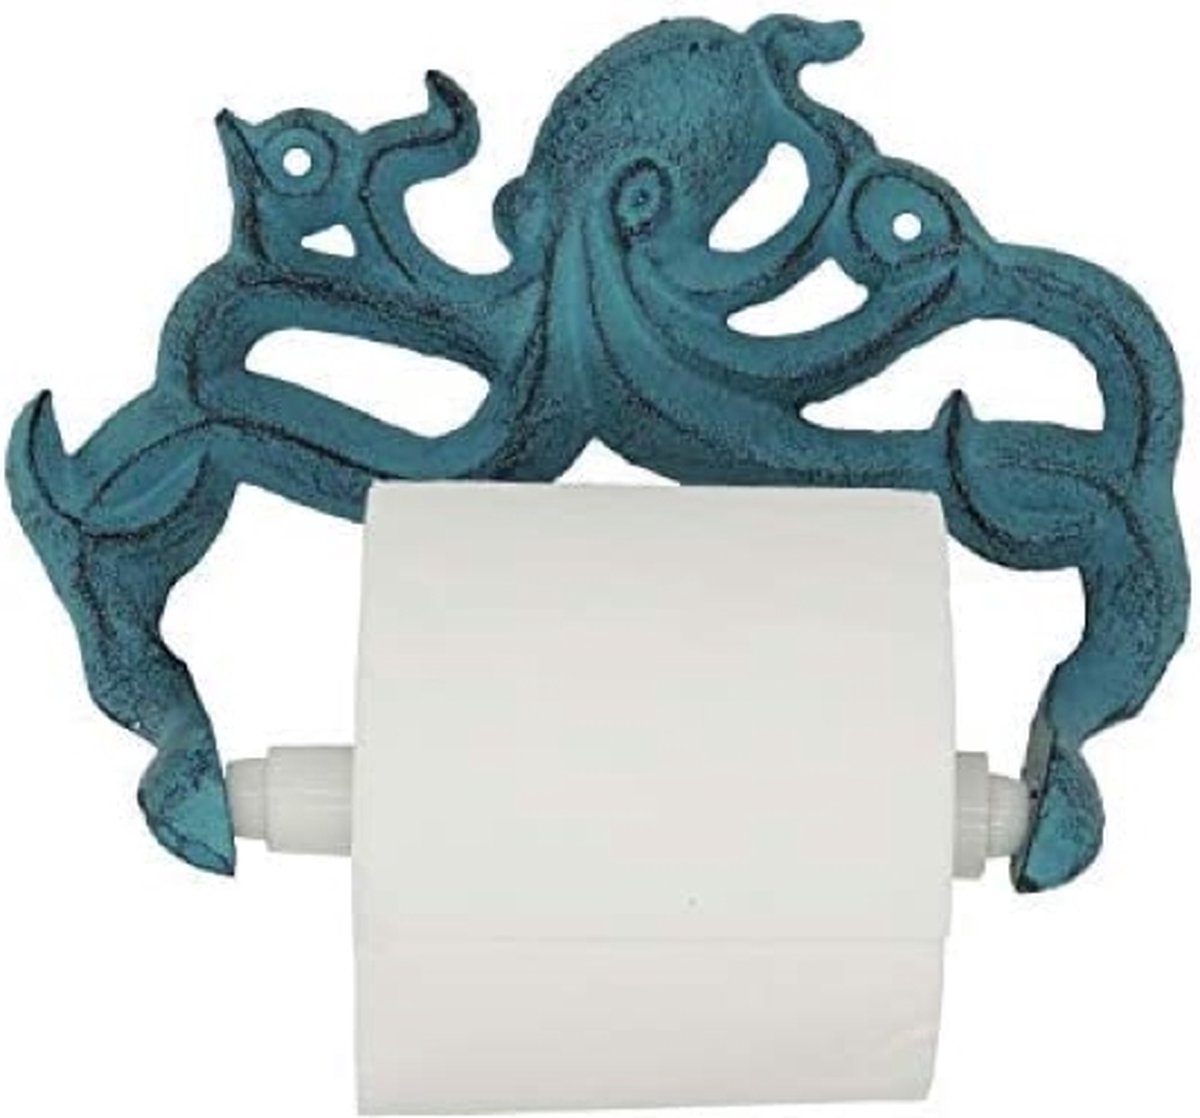 Decoratieve Gietijzeren Octopus Toiletrolhouder - Wandgemonteerde Octopus Décor voor Badkamer - Gemakkelijk te installeren met meegeleverde Schroeven en Ankers - Blauw